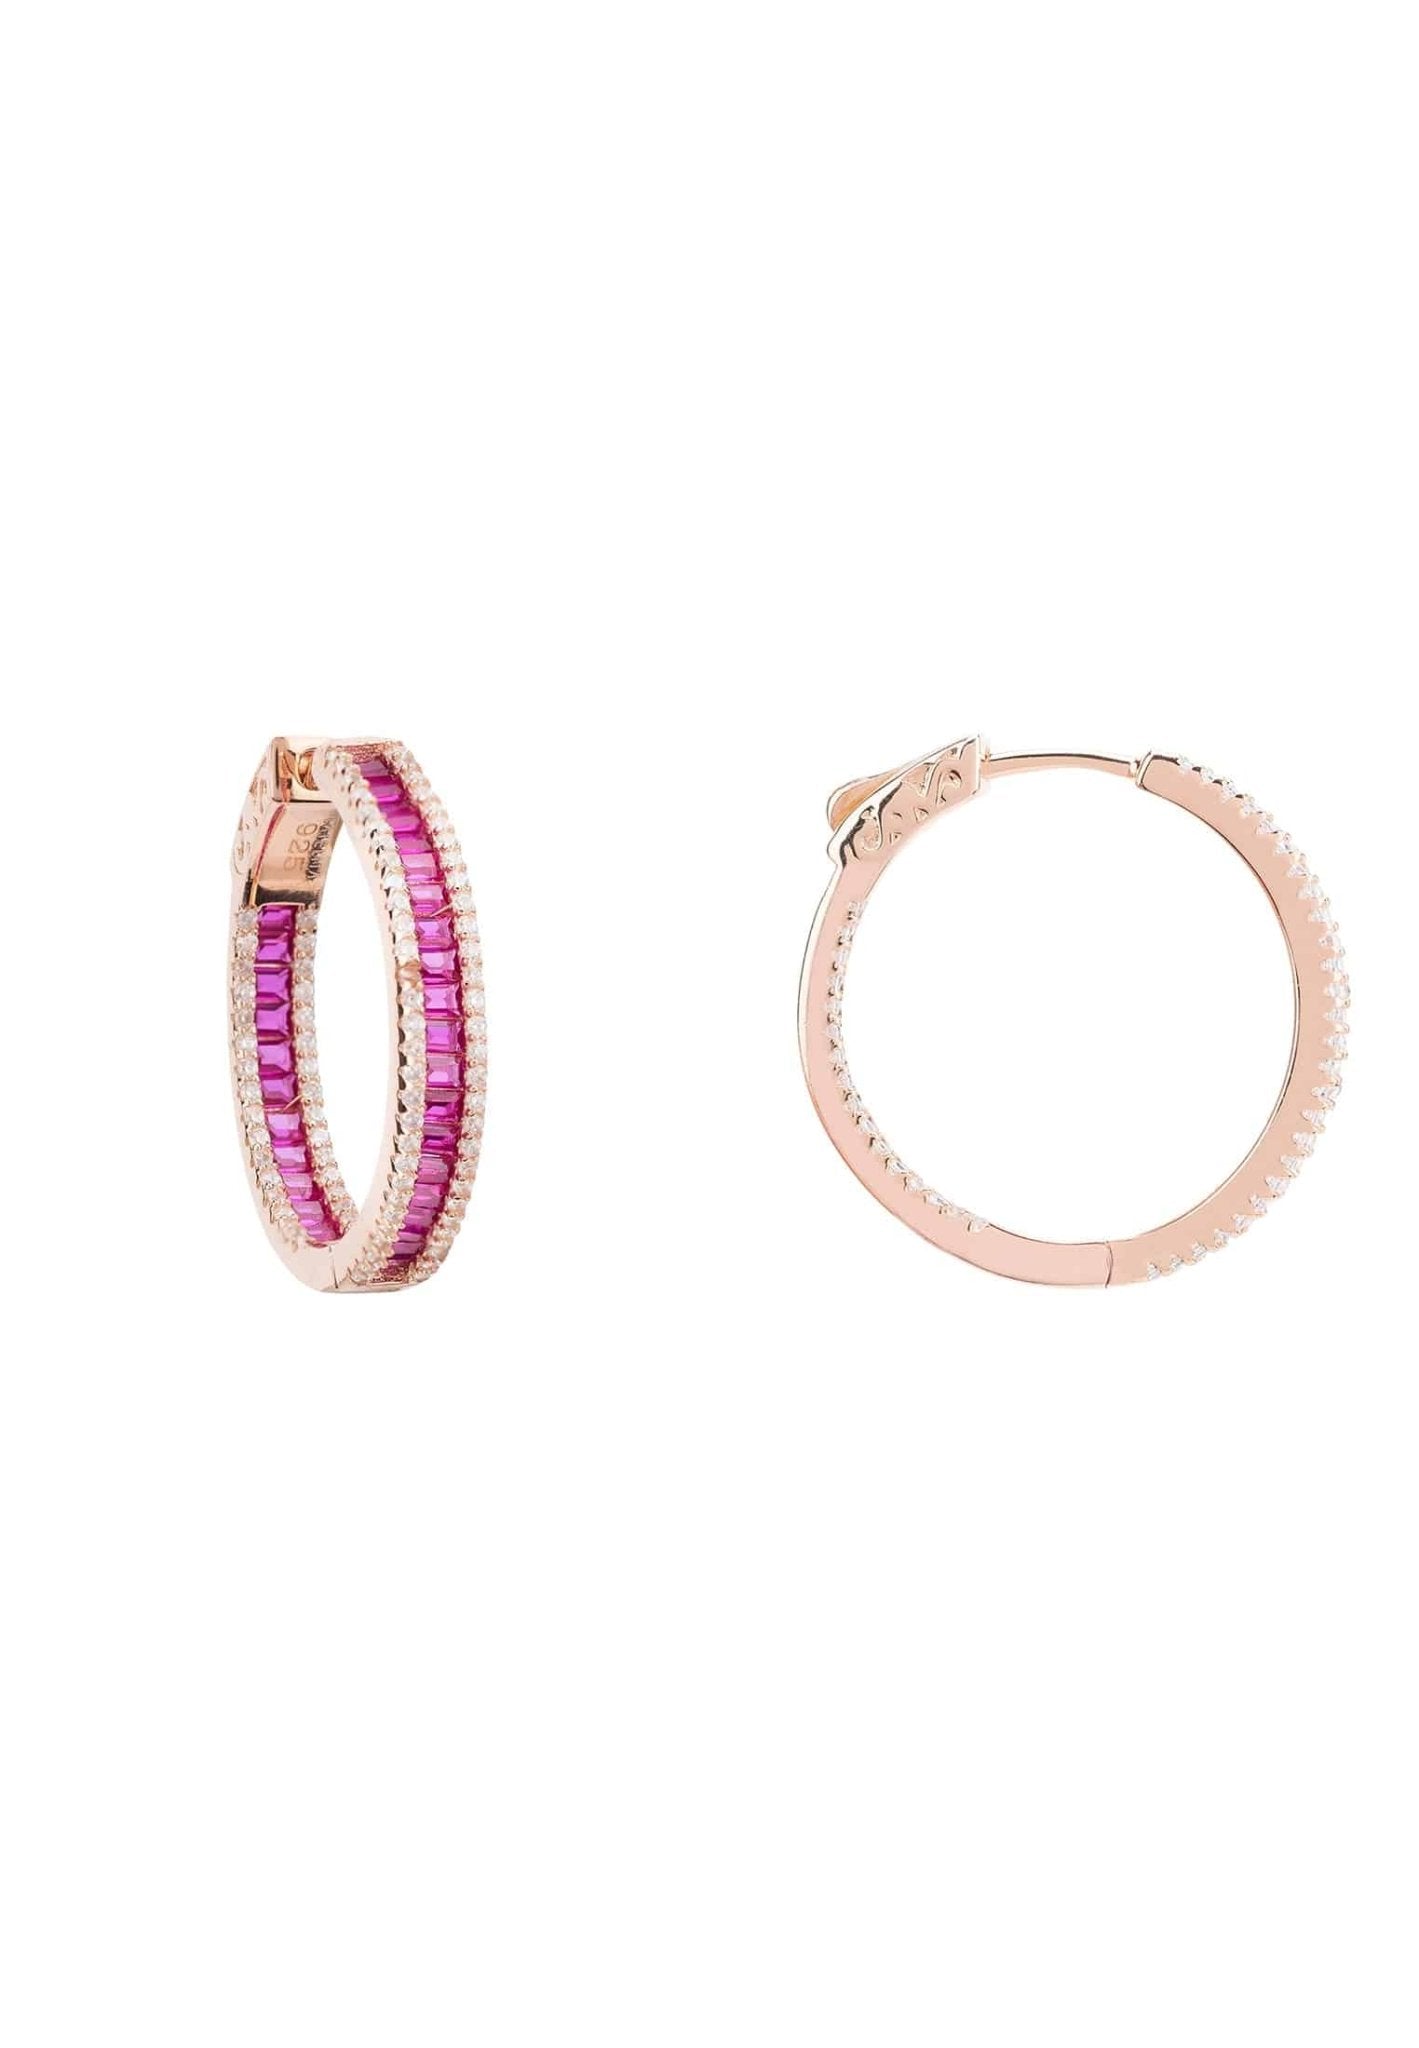 Baguette Hoop Earrings Medium Rosegold Ruby Pink - LATELITA Earrings